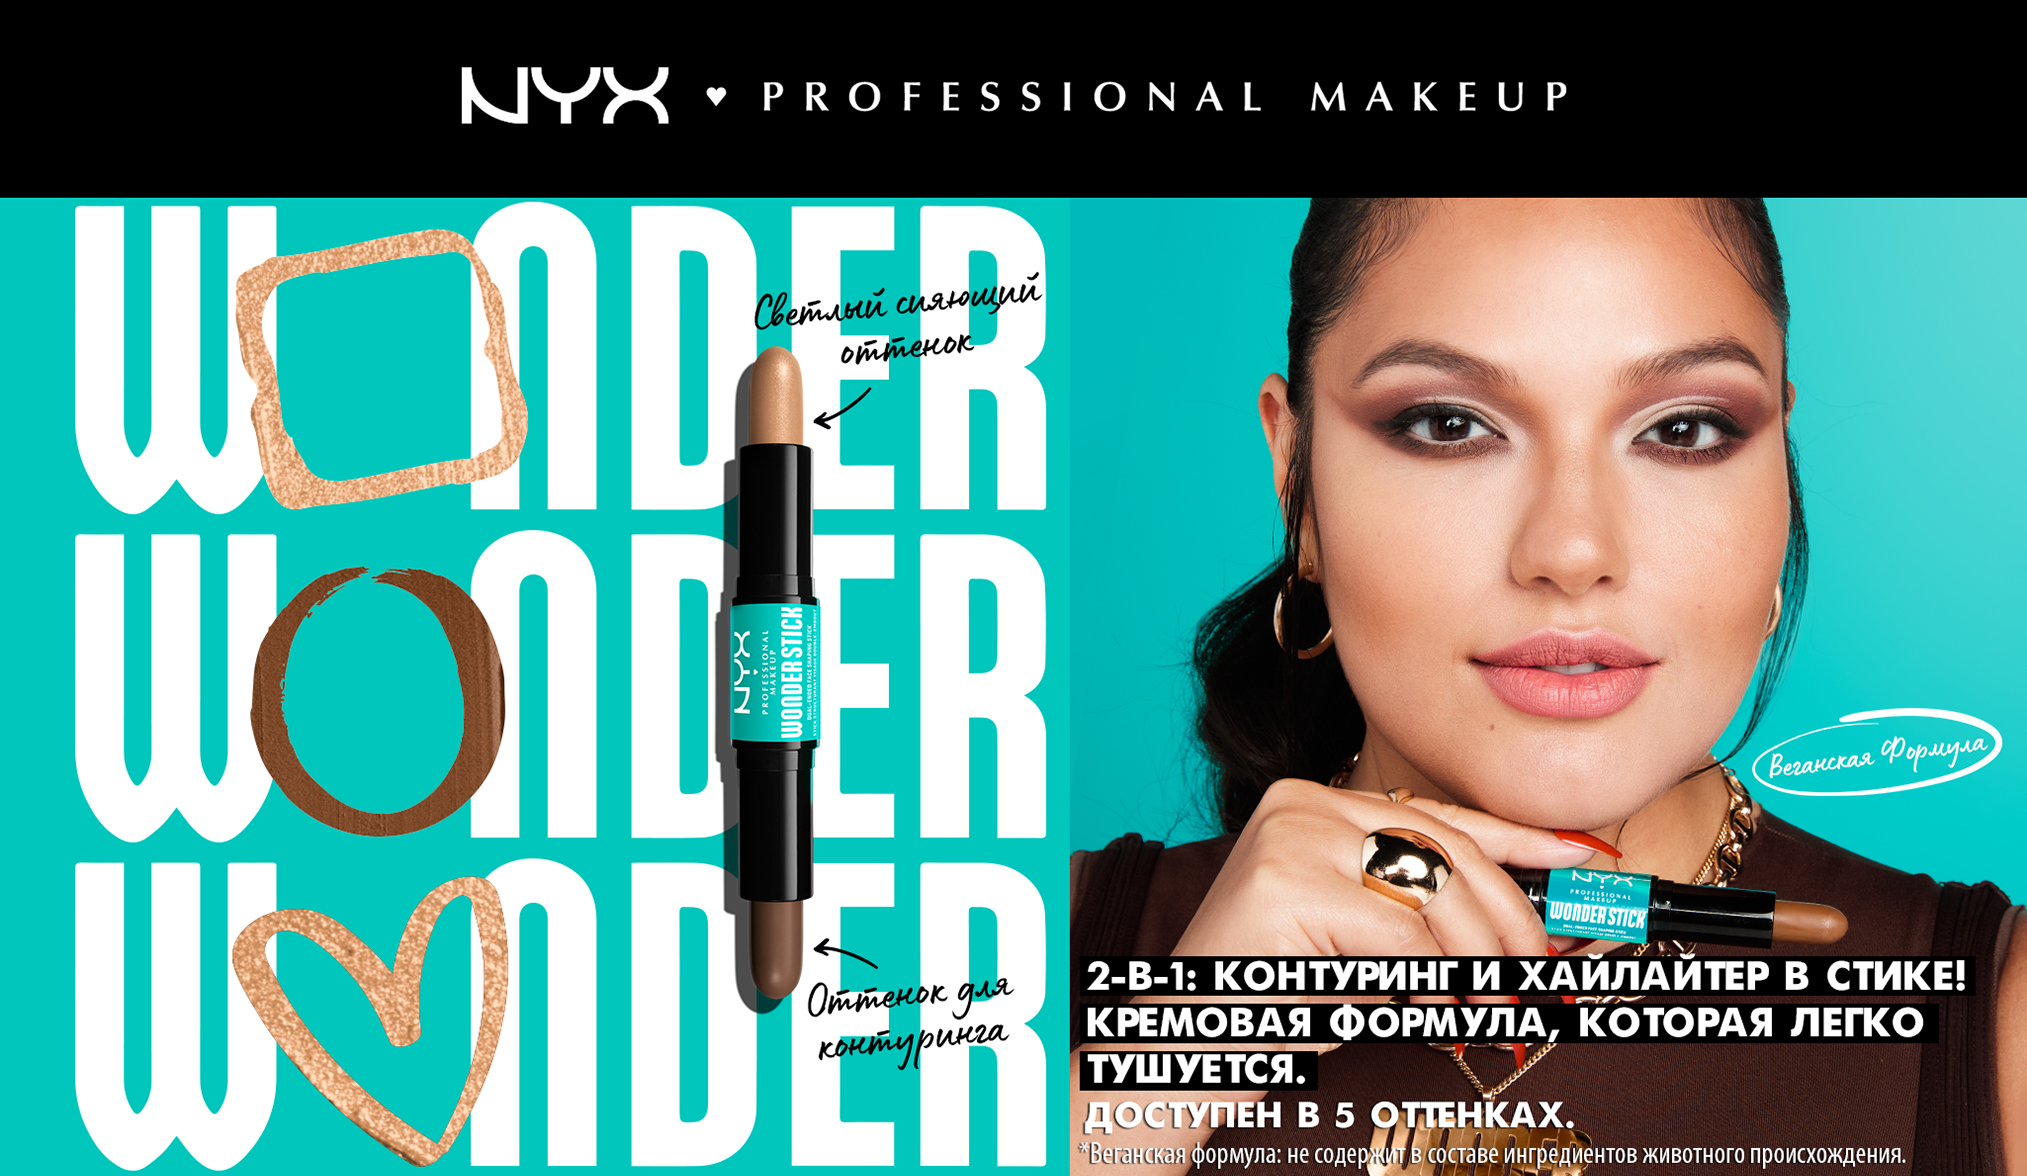 NYX Professional Makeup Wonder Stick Dual Face Highlight & Contour